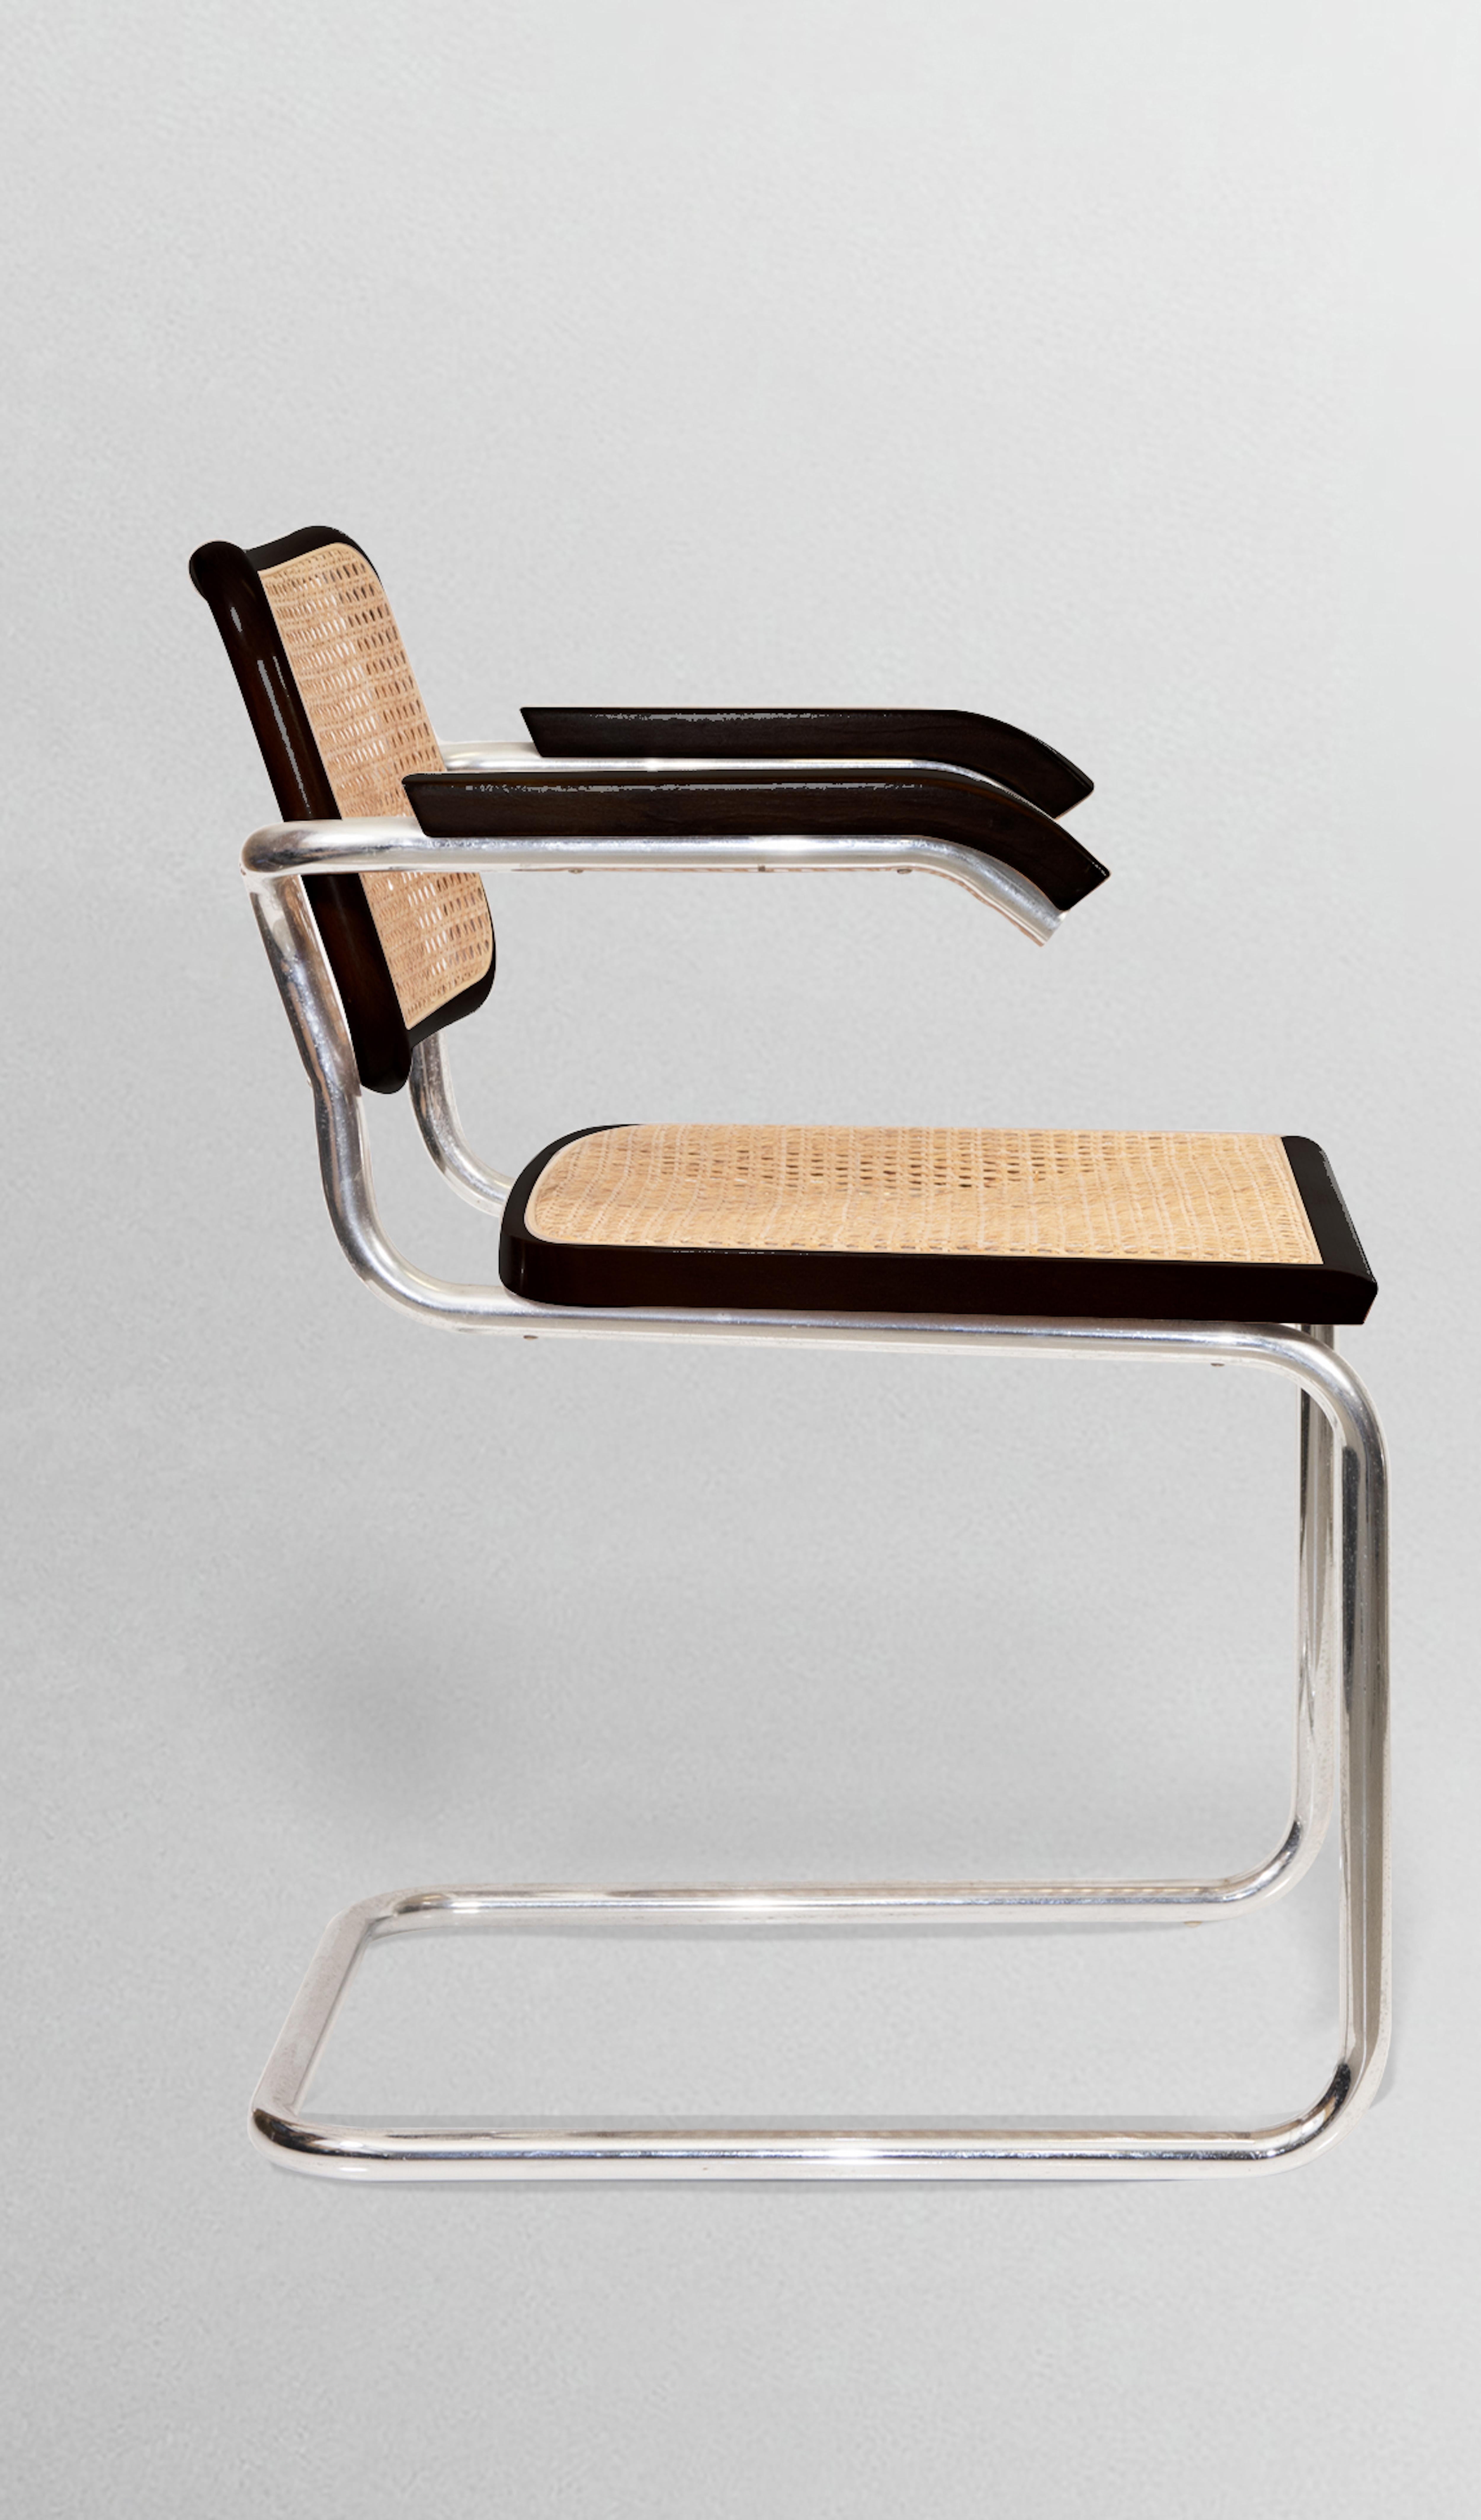 Cesca Chairs ist ein Satz von 8 Stühlen, die von Marcel Breuer entworfen und von Dino Gavina in den 1970er Jahren realisiert wurden.

Tragende Struktur aus durchgehendem, kalt gebogenem und verchromtem Stahlrohr vom Typ Mannesmann. 
Sitz und